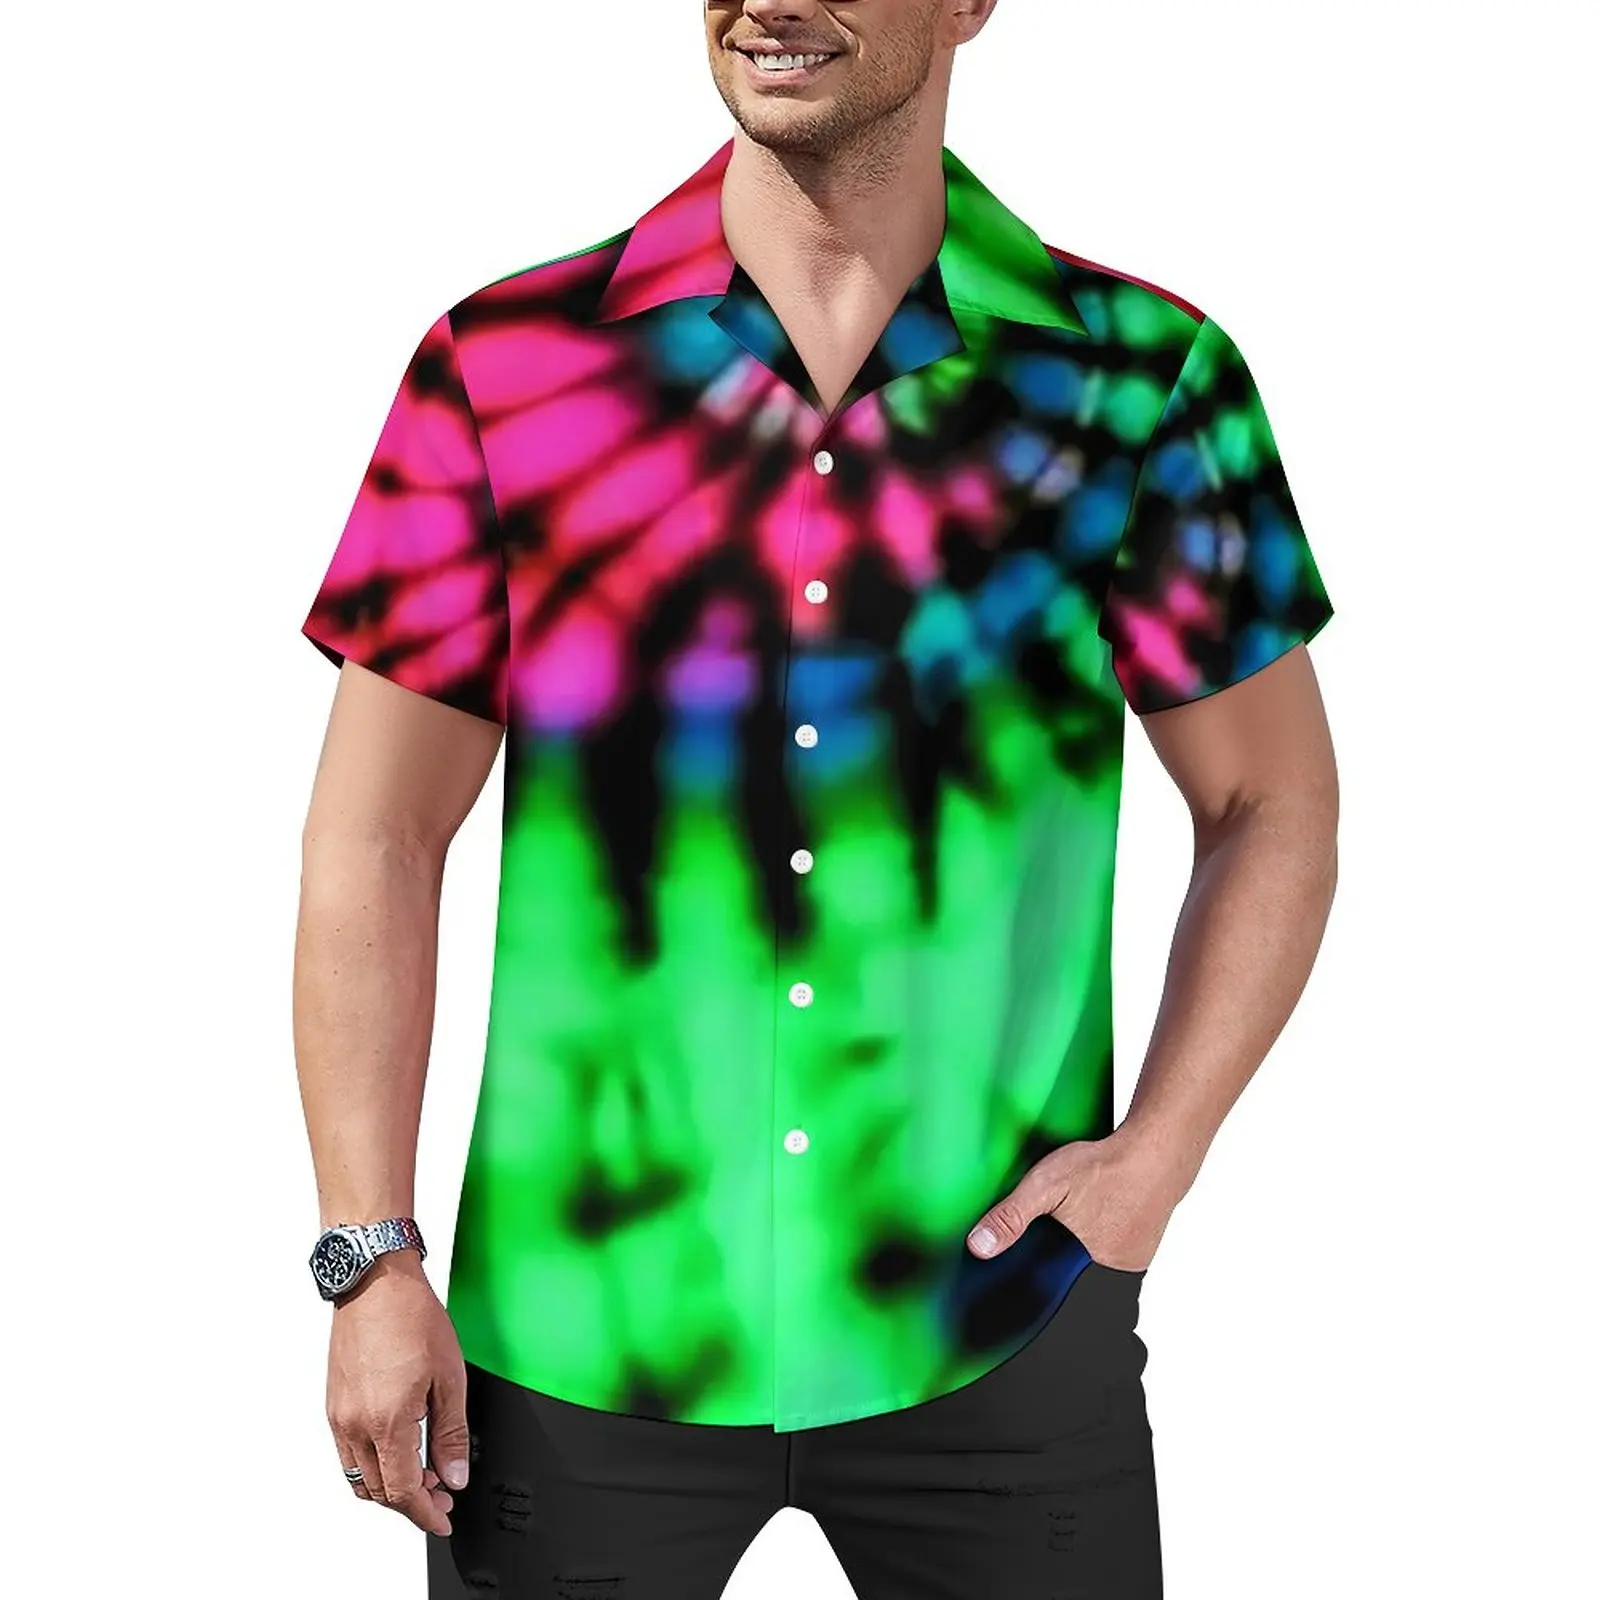 

Bright Tie Dye Vacation Shirt Rainbow Print Hawaiian Casual Shirts Man Harajuku Blouses Short Sleeves Graphic Clothes Large Size